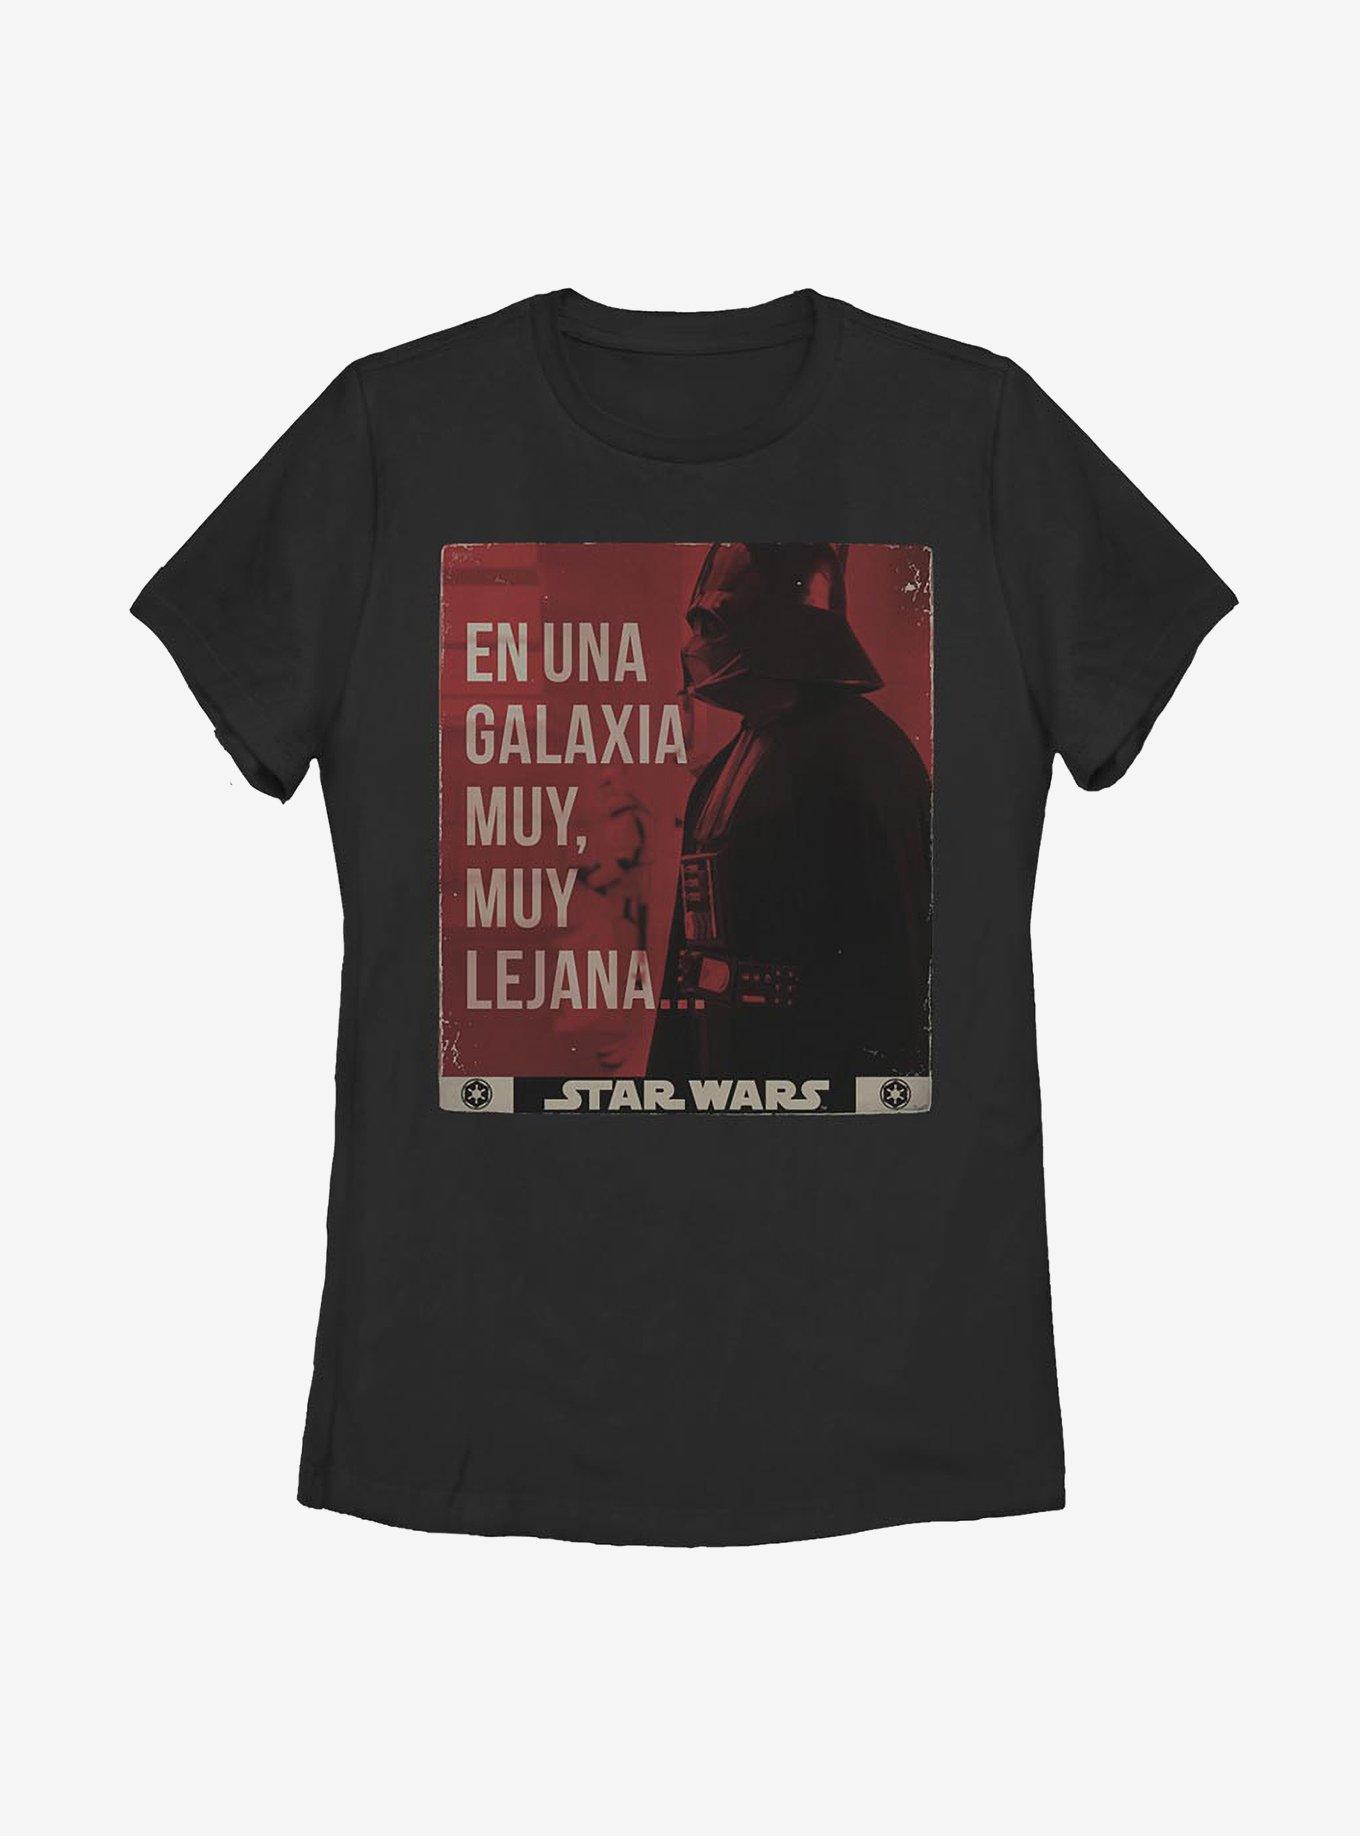 Star Wars Una-Galaxia Womens T-Shirt, BLACK, hi-res